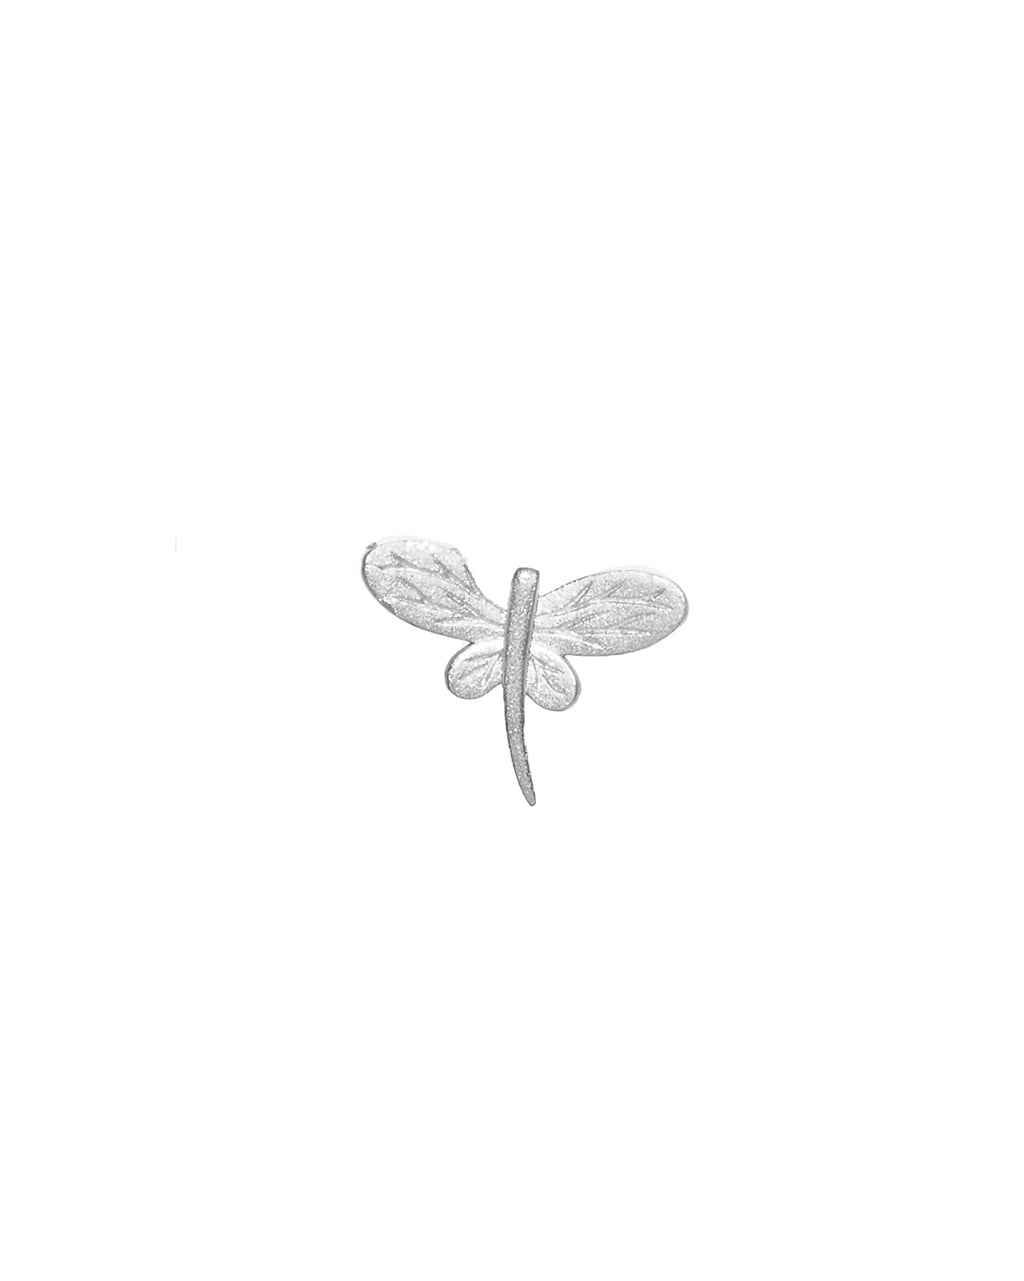 Single Dragon-fly earring